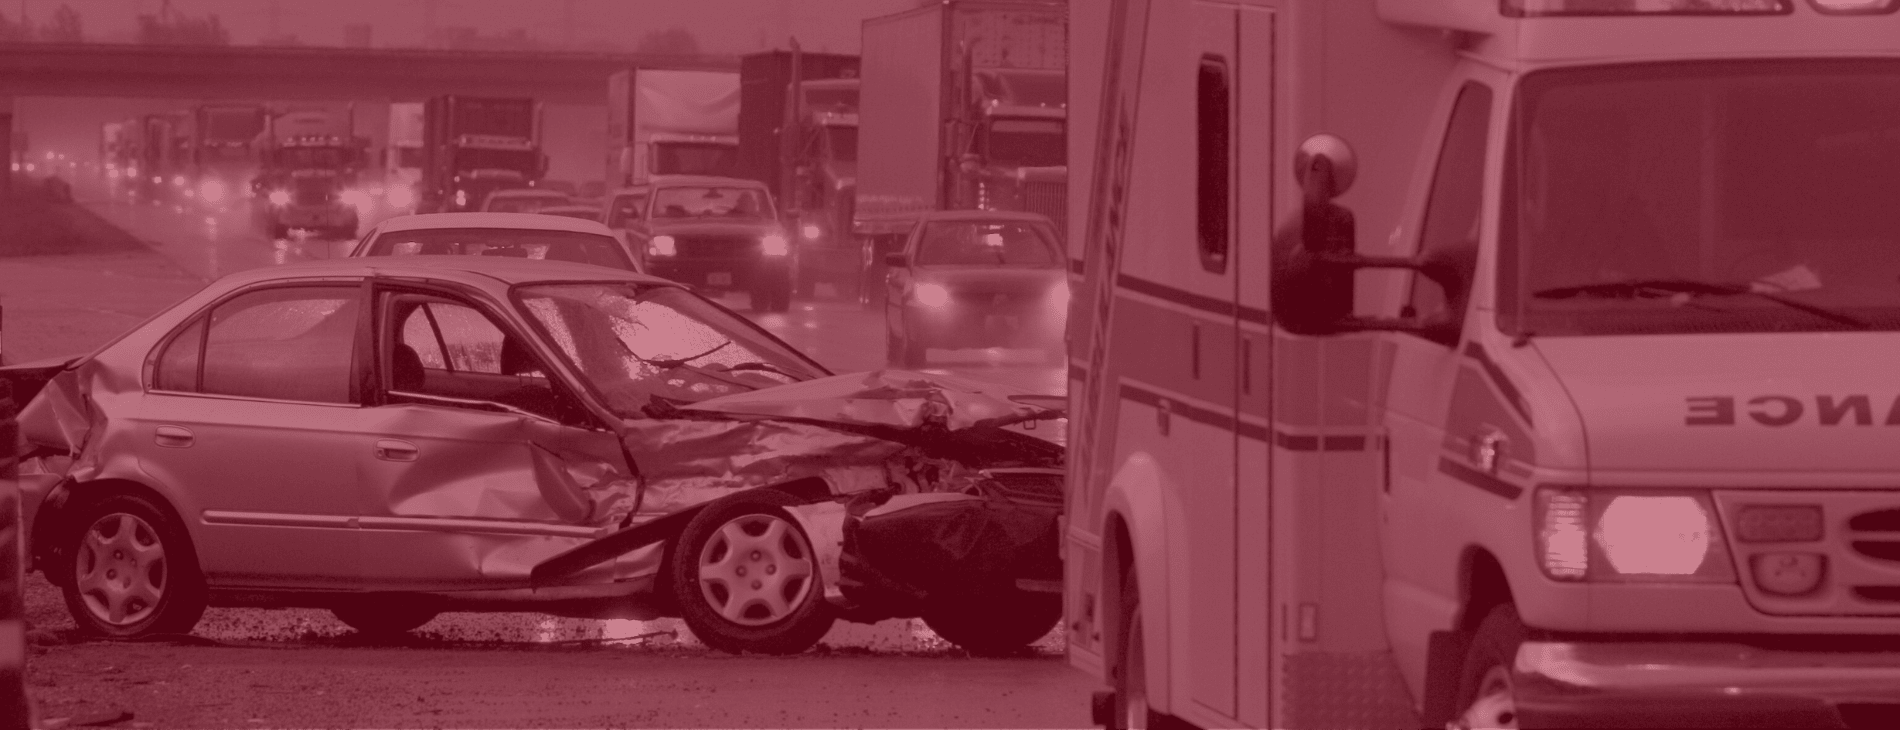 Interstate 215 five-car crash